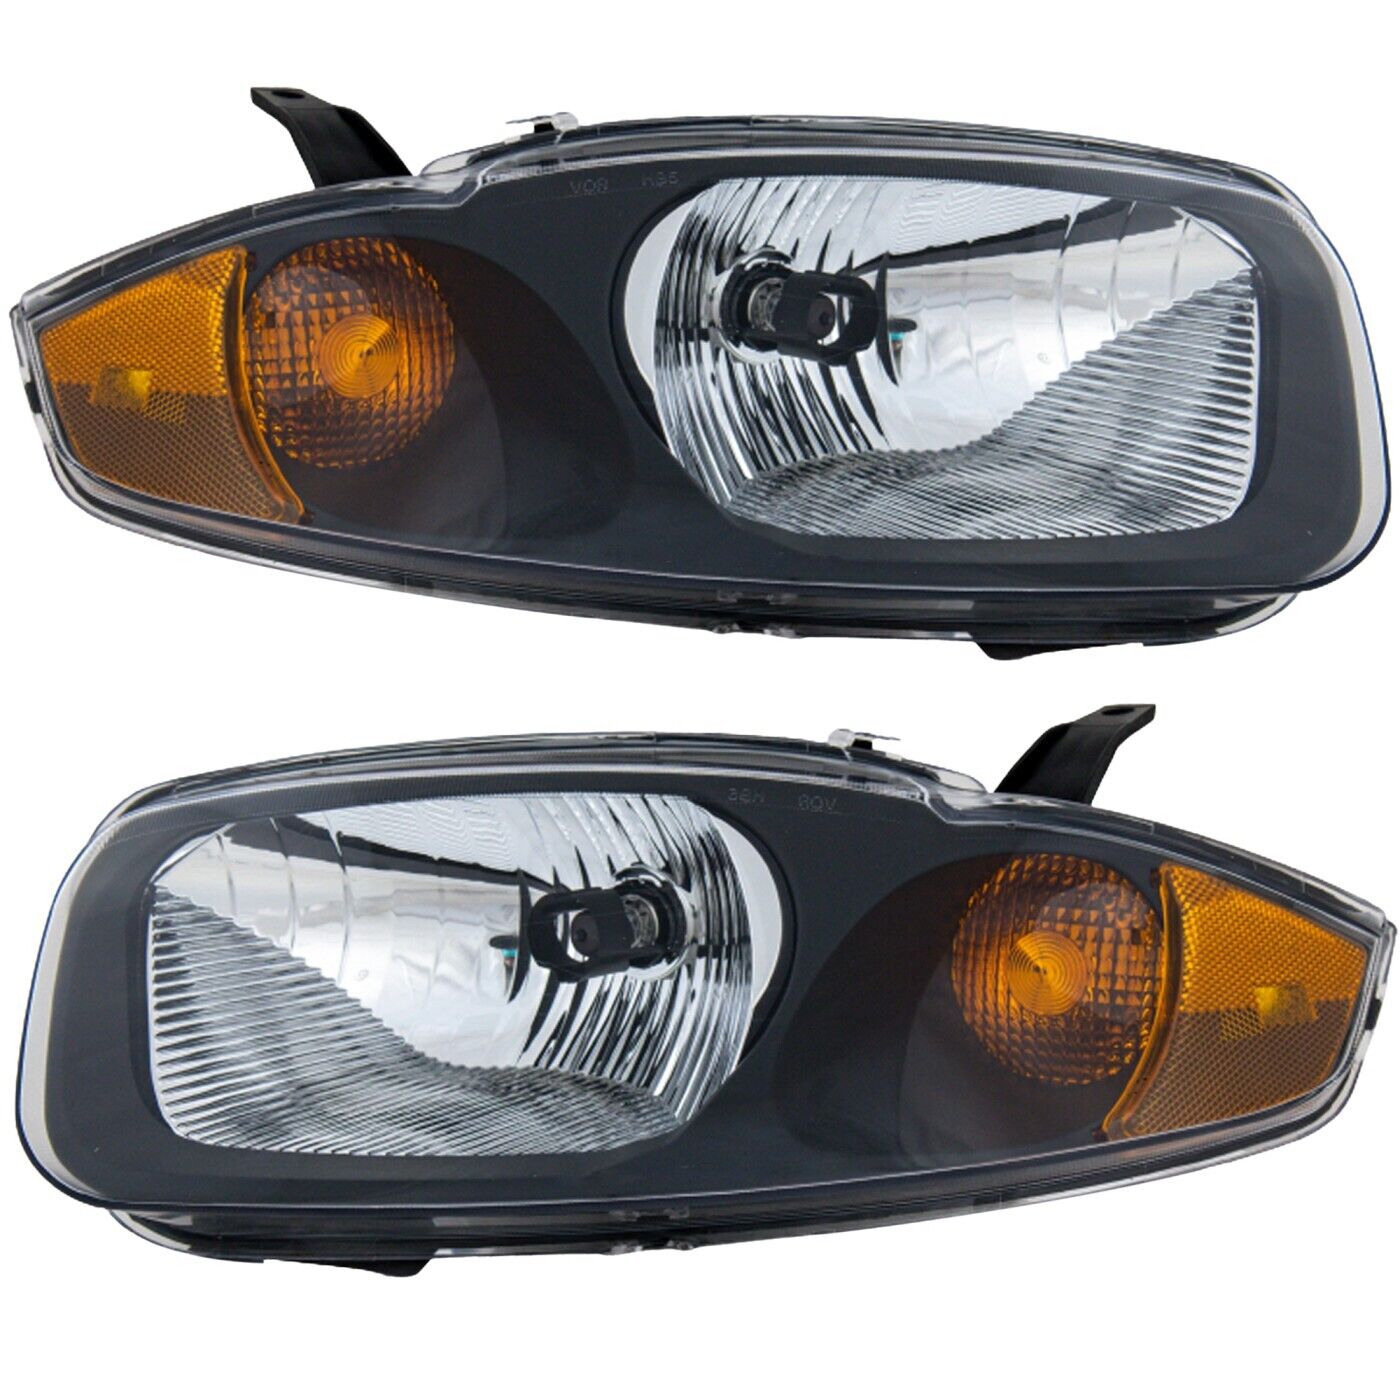 Headlight Set For 2003-2005 Chevrolet Cavalier Driver and Passenger Side